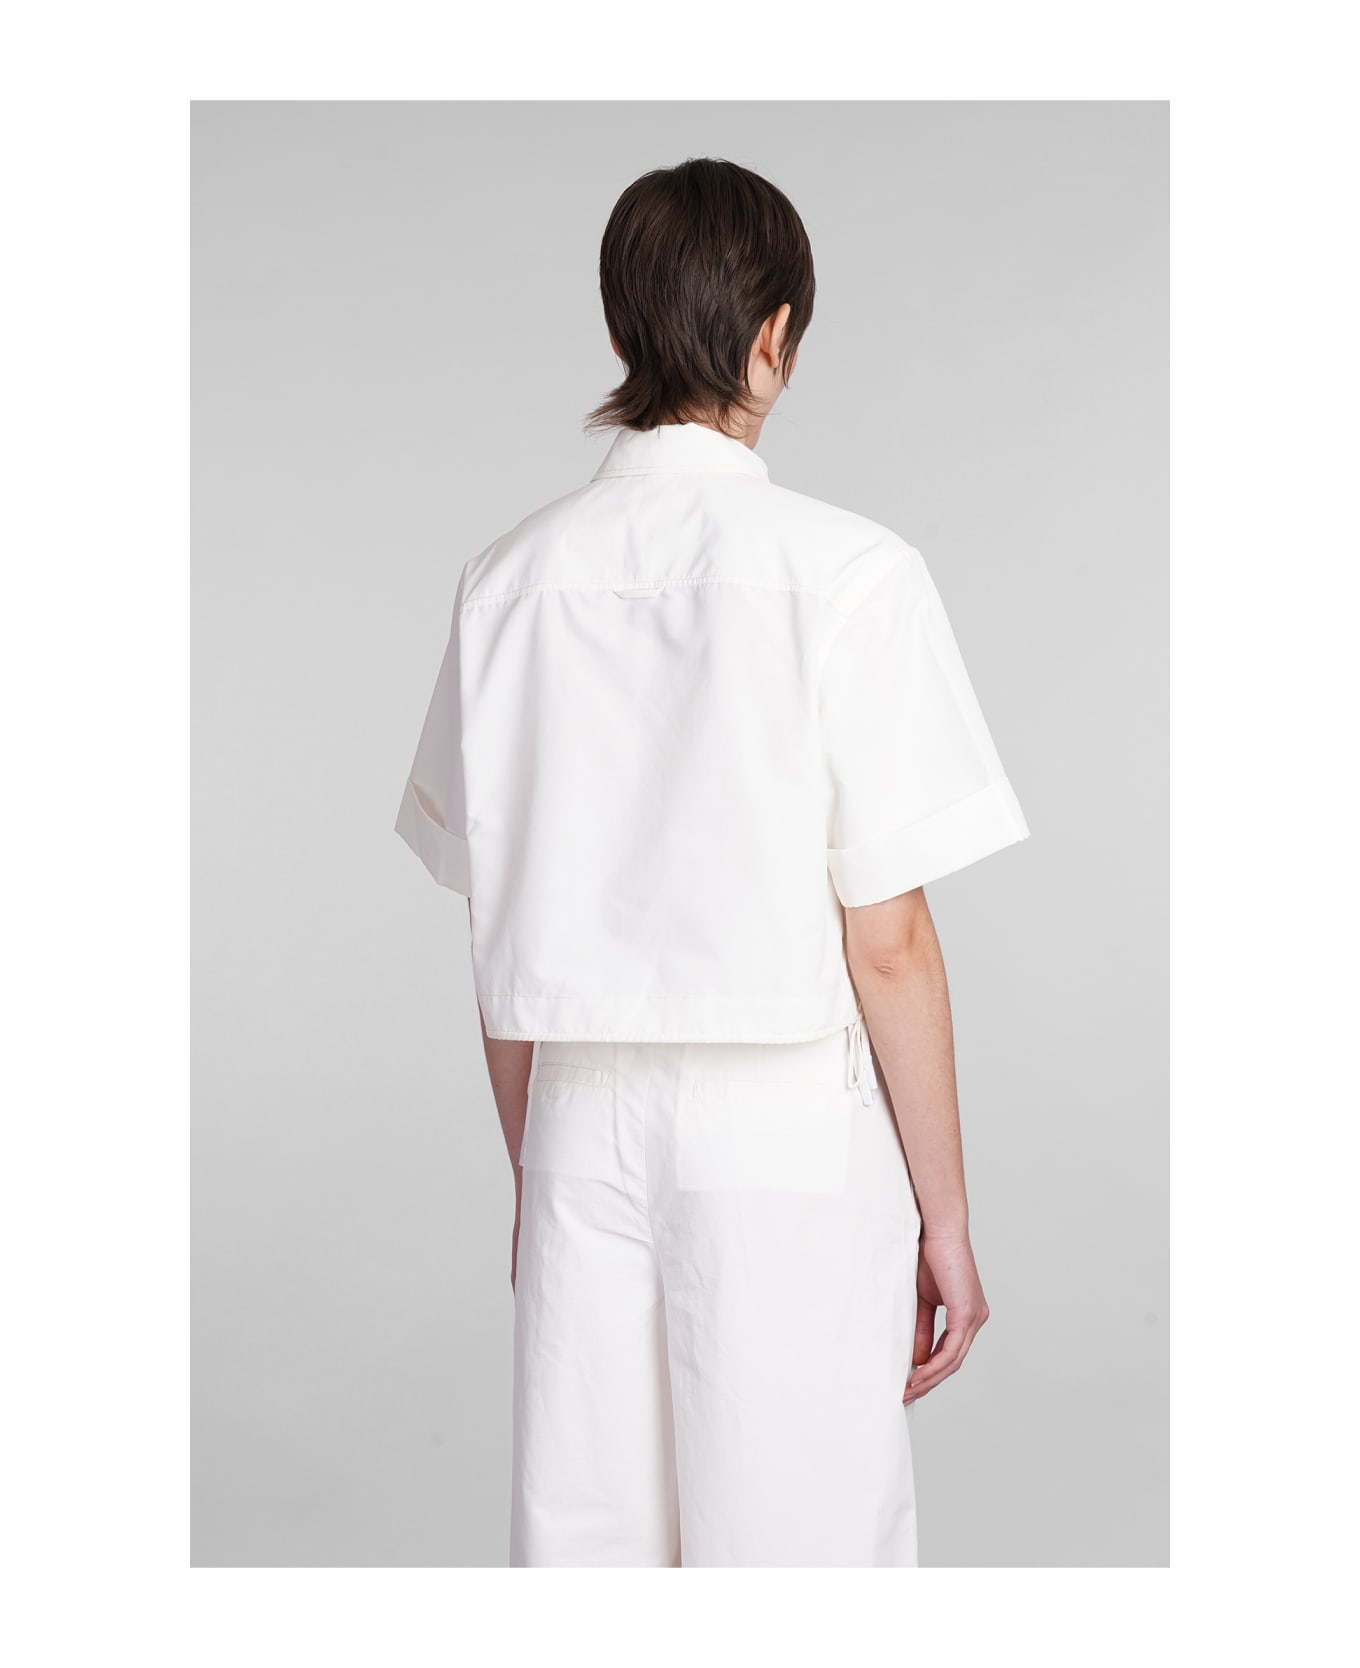 Simkhai Ryett Shirt In White Cotton - white